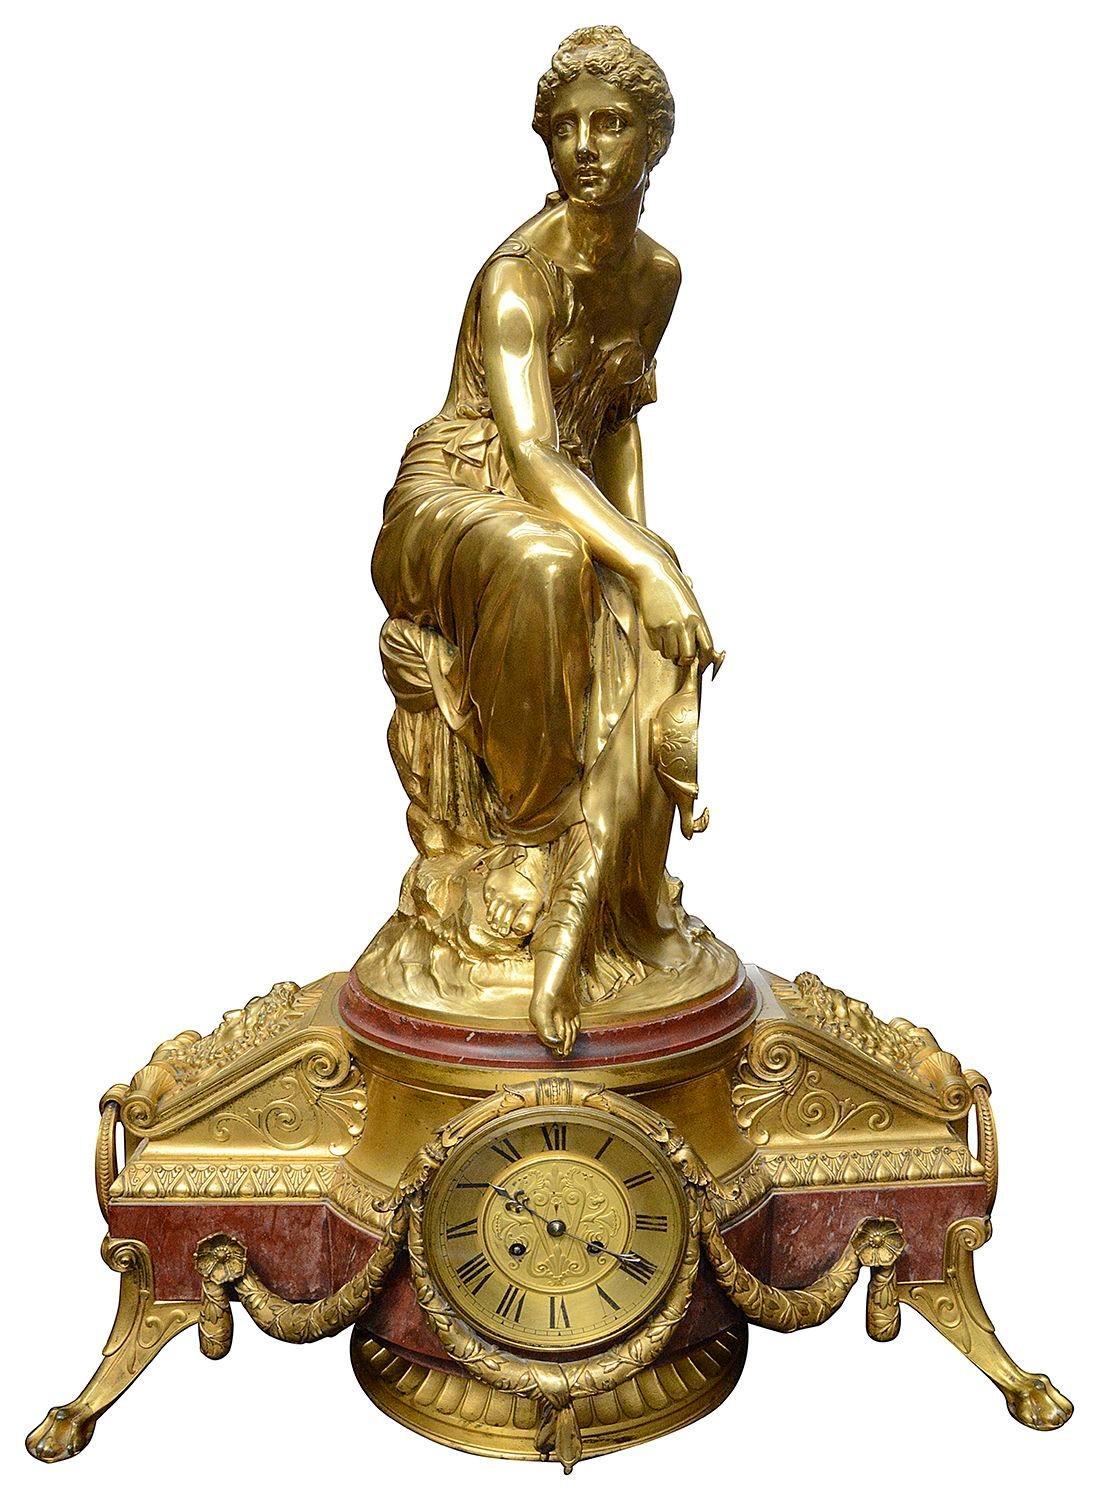 Eine spektakuläre Französisch 19. Jahrhundert Rouge Marmor und vergoldet Ormolu Uhr Garnitur, mit einem schönen sitzenden Madian hält eine Öllampe über maskierten Halterungen mit Ring Griffe auf beiden Seiten der Uhr Gesicht. Die Dauer der Uhr